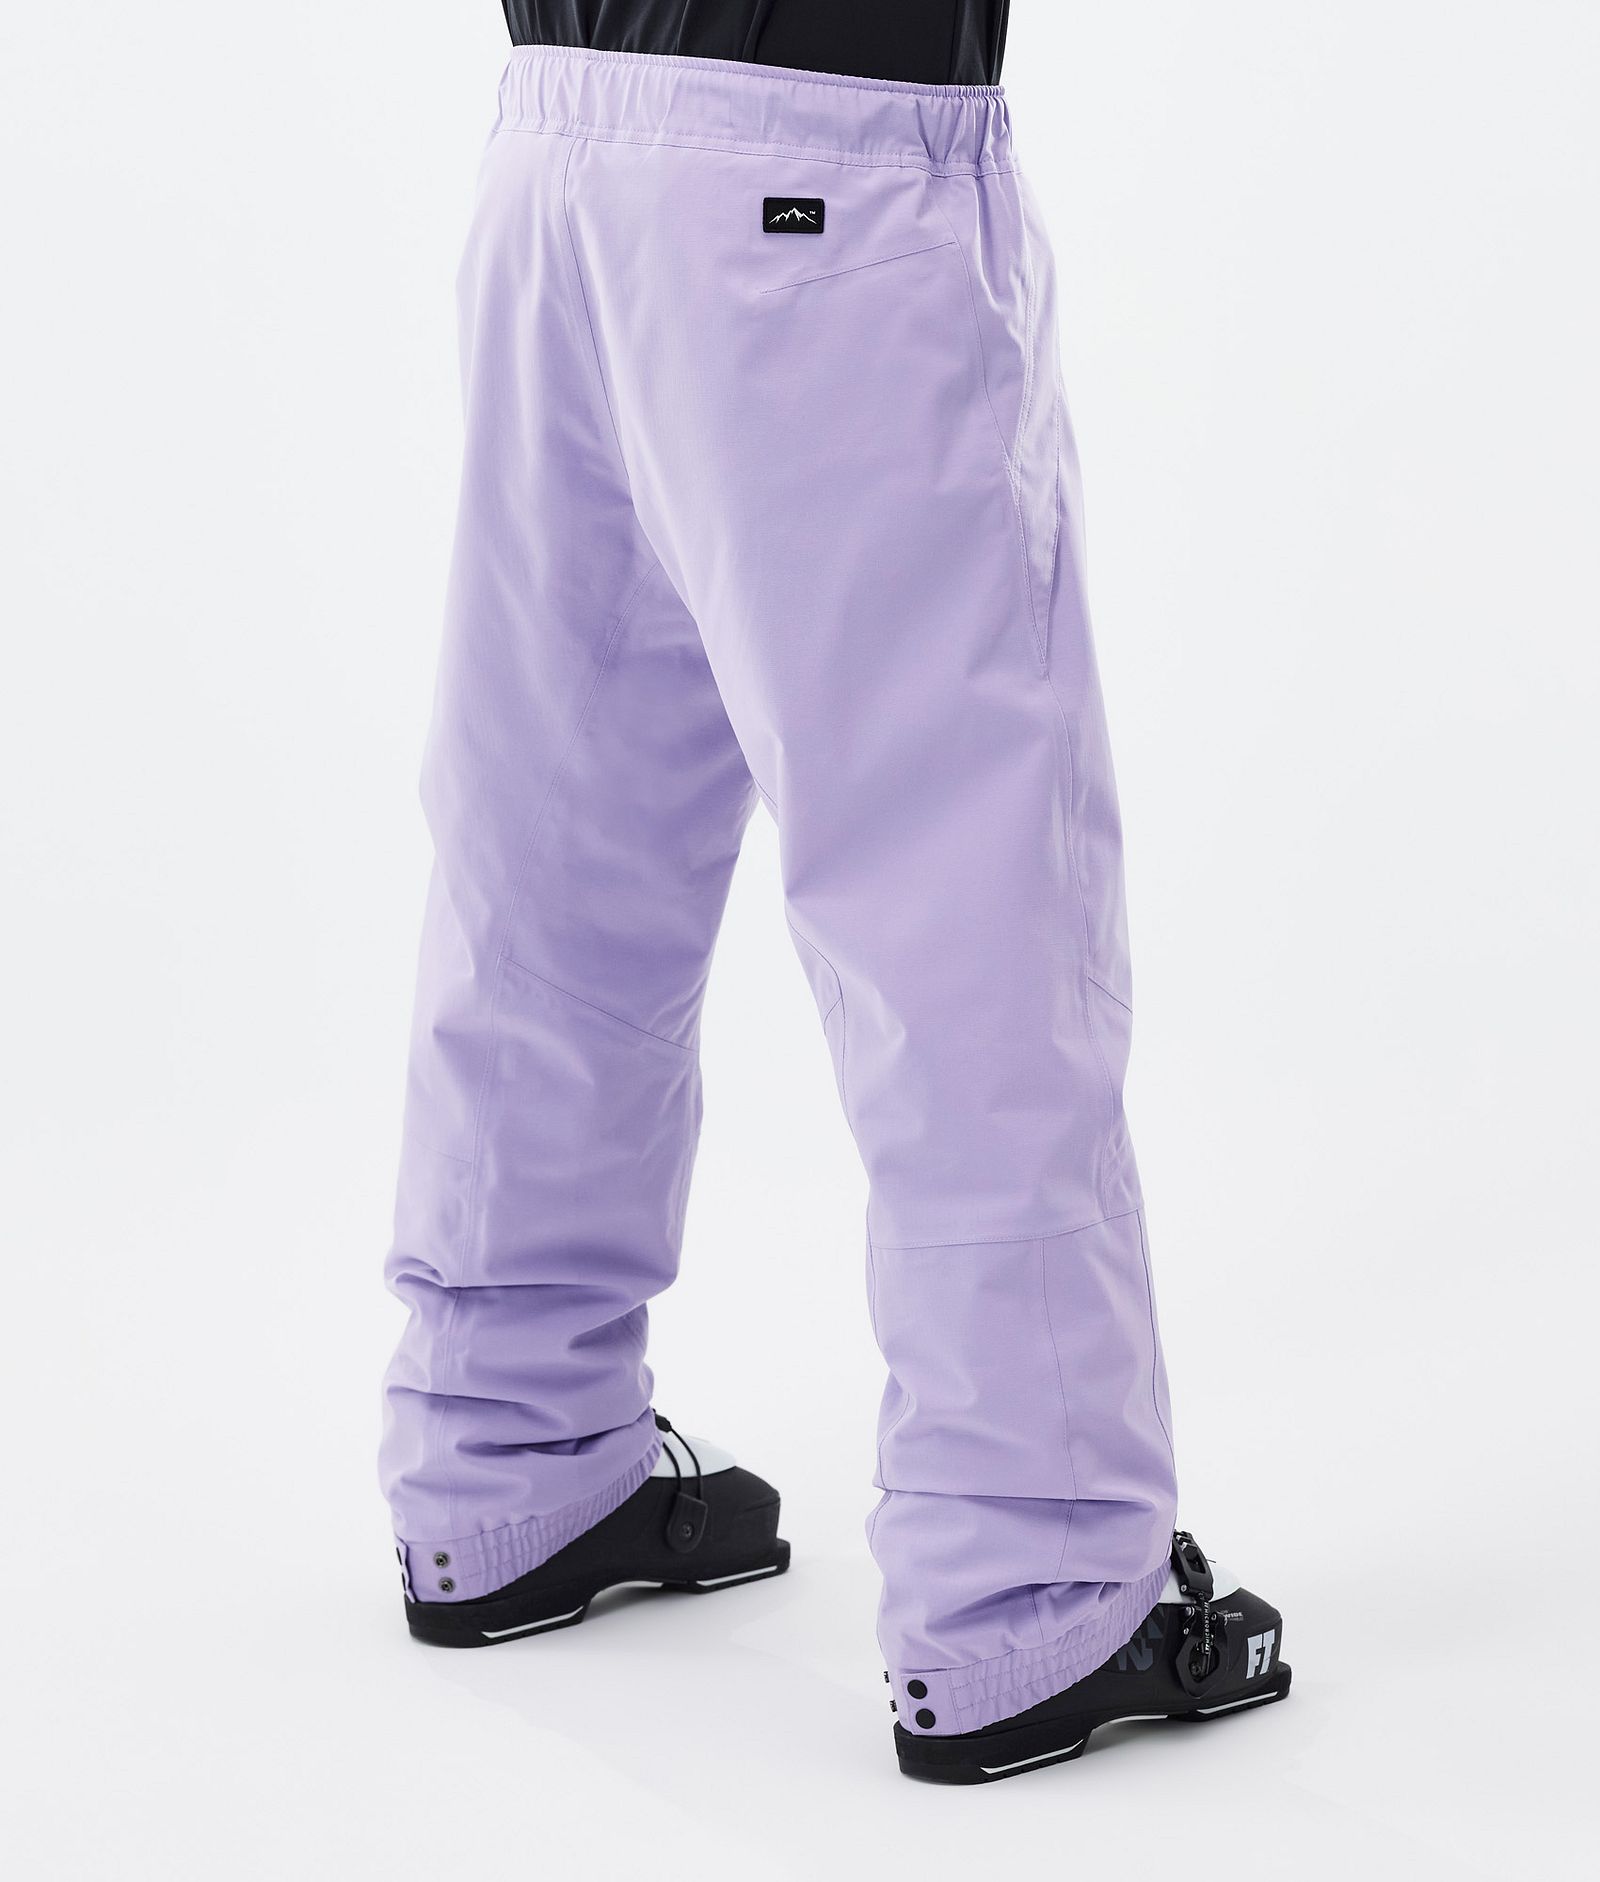 Dope Blizzard Pantaloni Sci Uomo Faded Violet